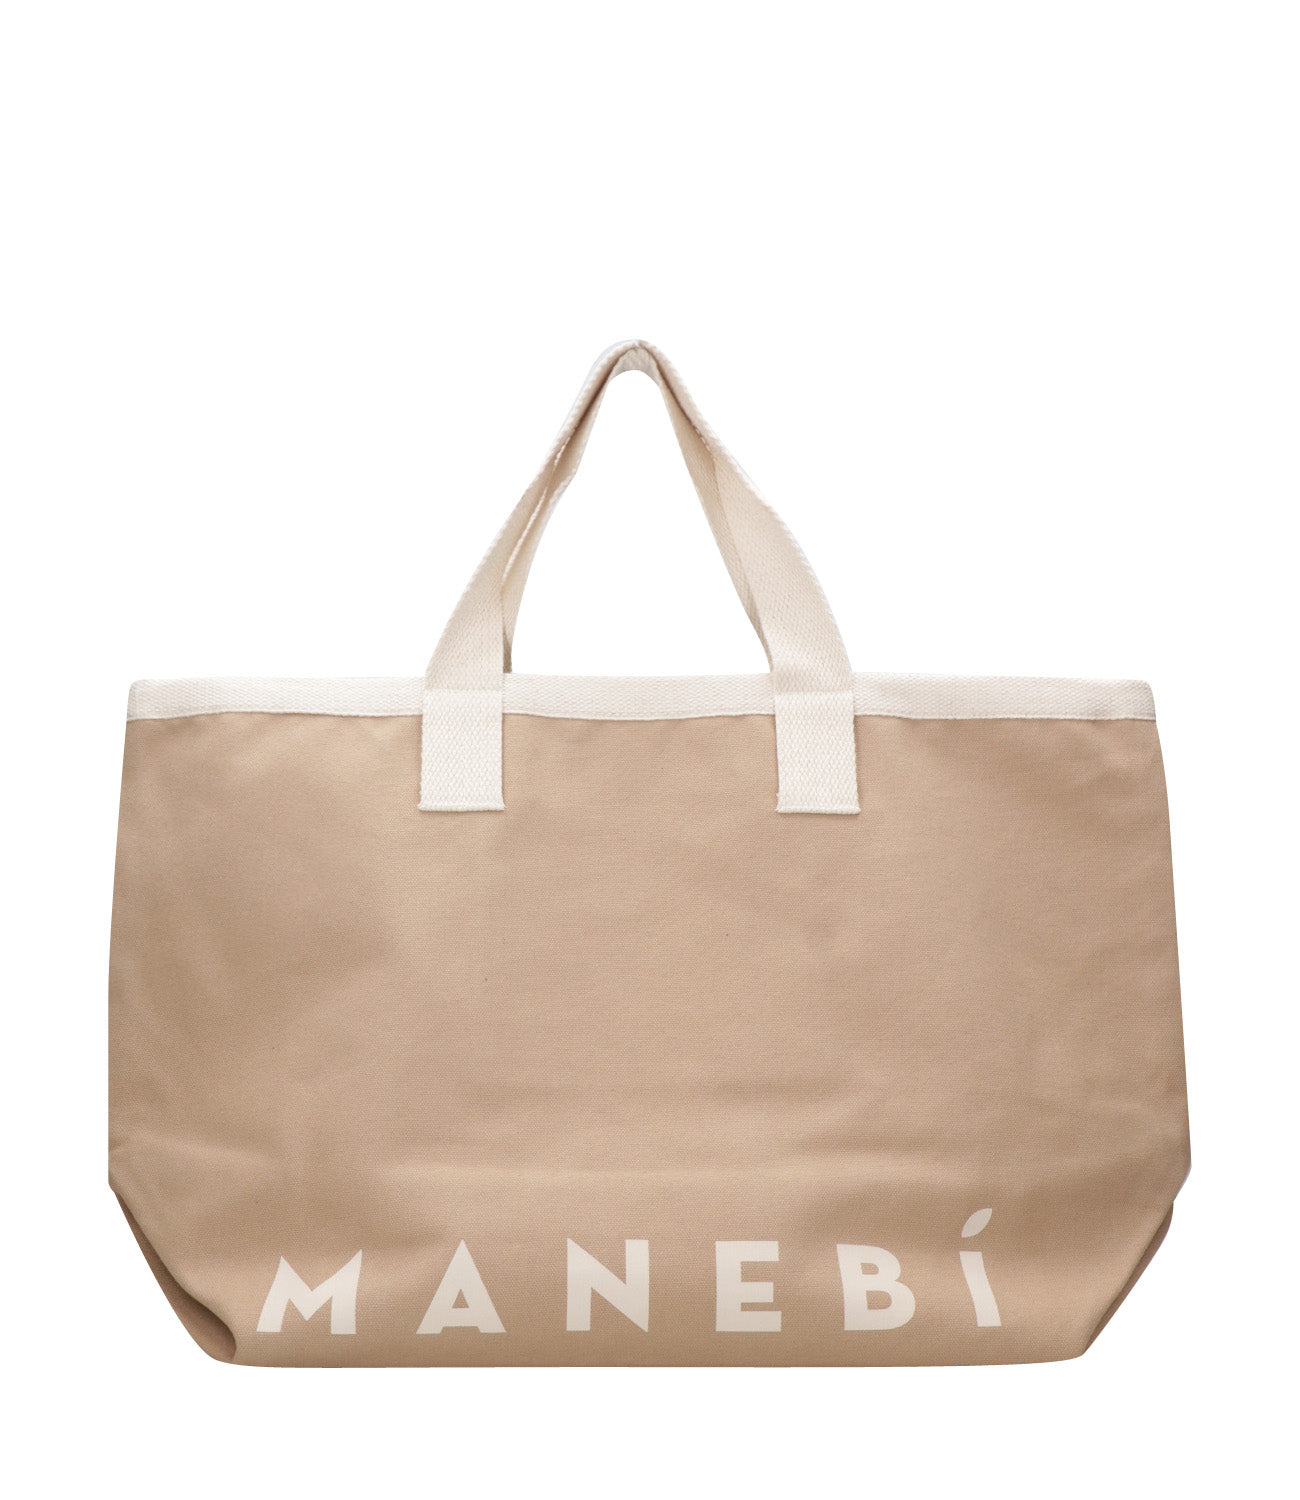 Manebi | California Tote Bag Desert and Ecru